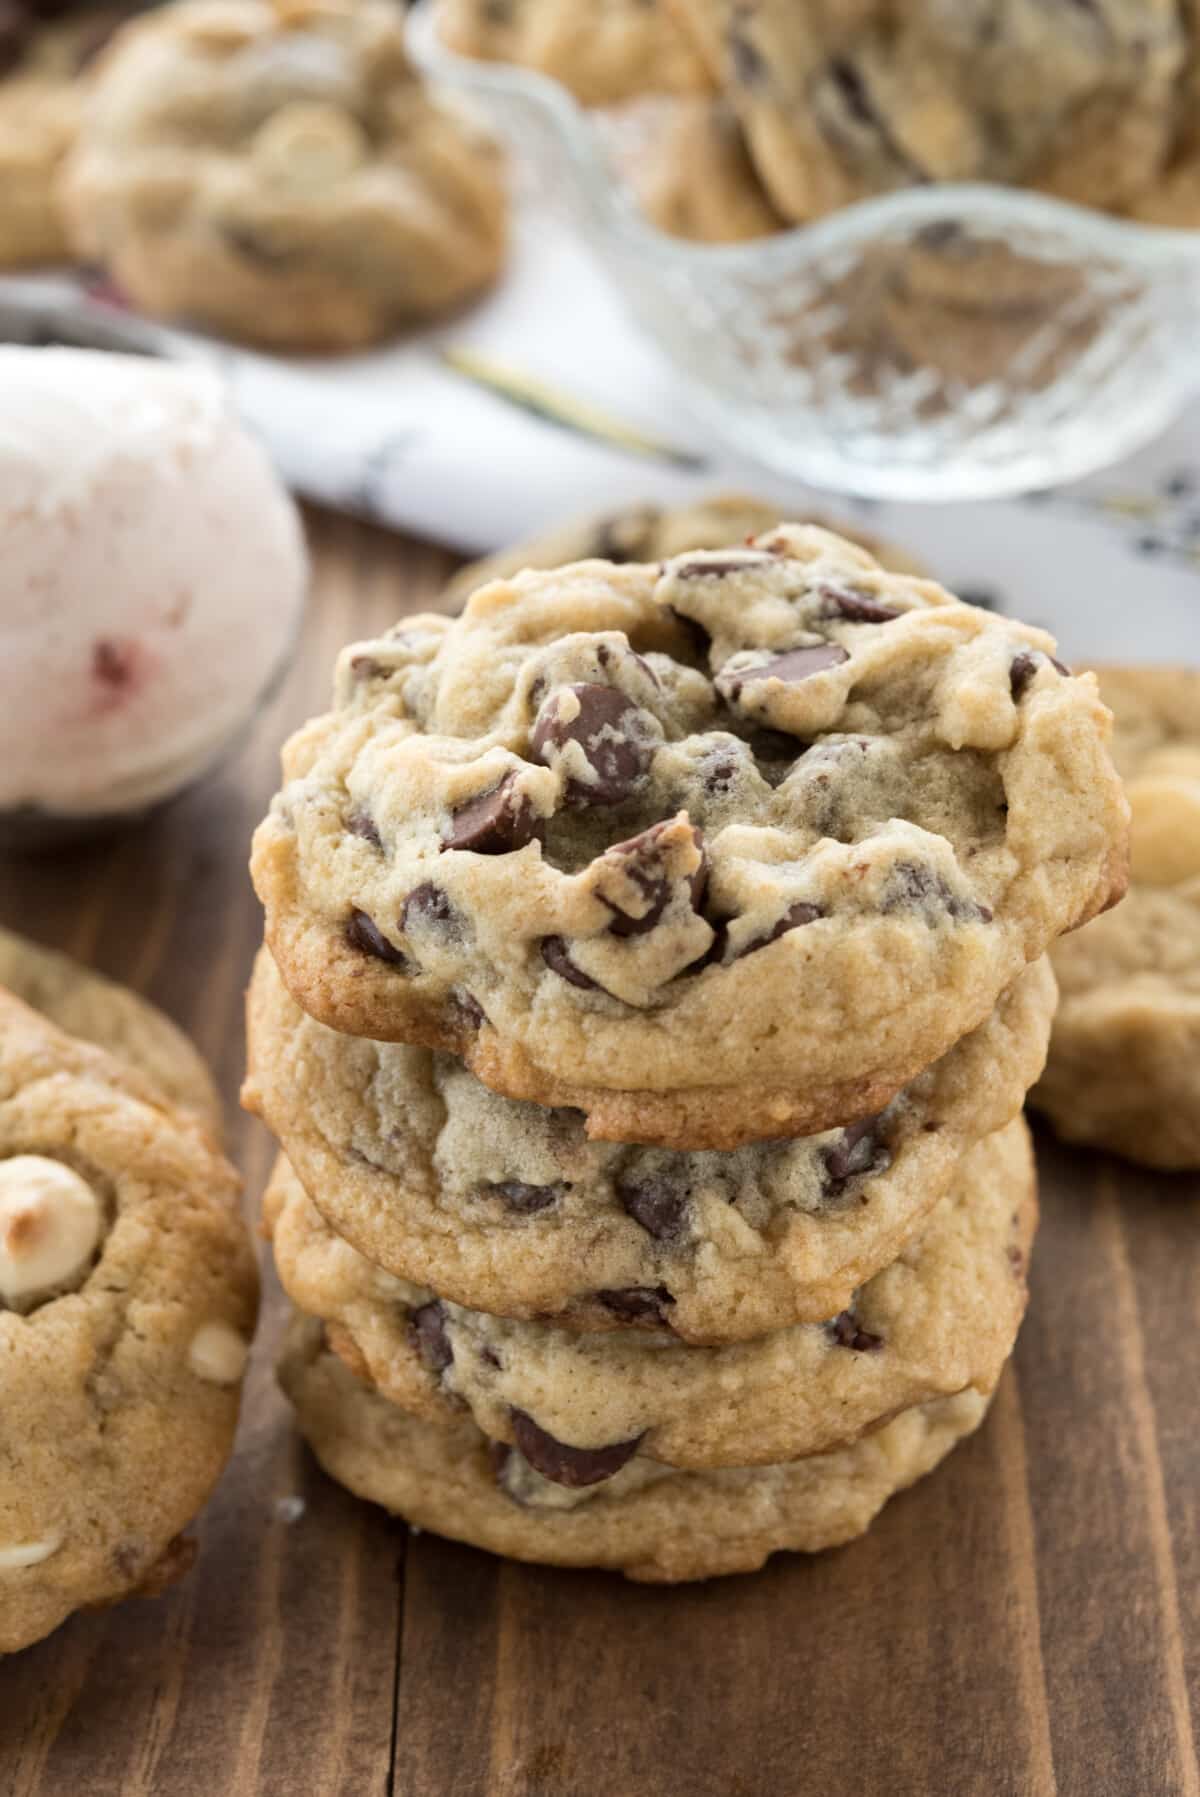 Cookie Dough Scoop - Cookies & Cream*